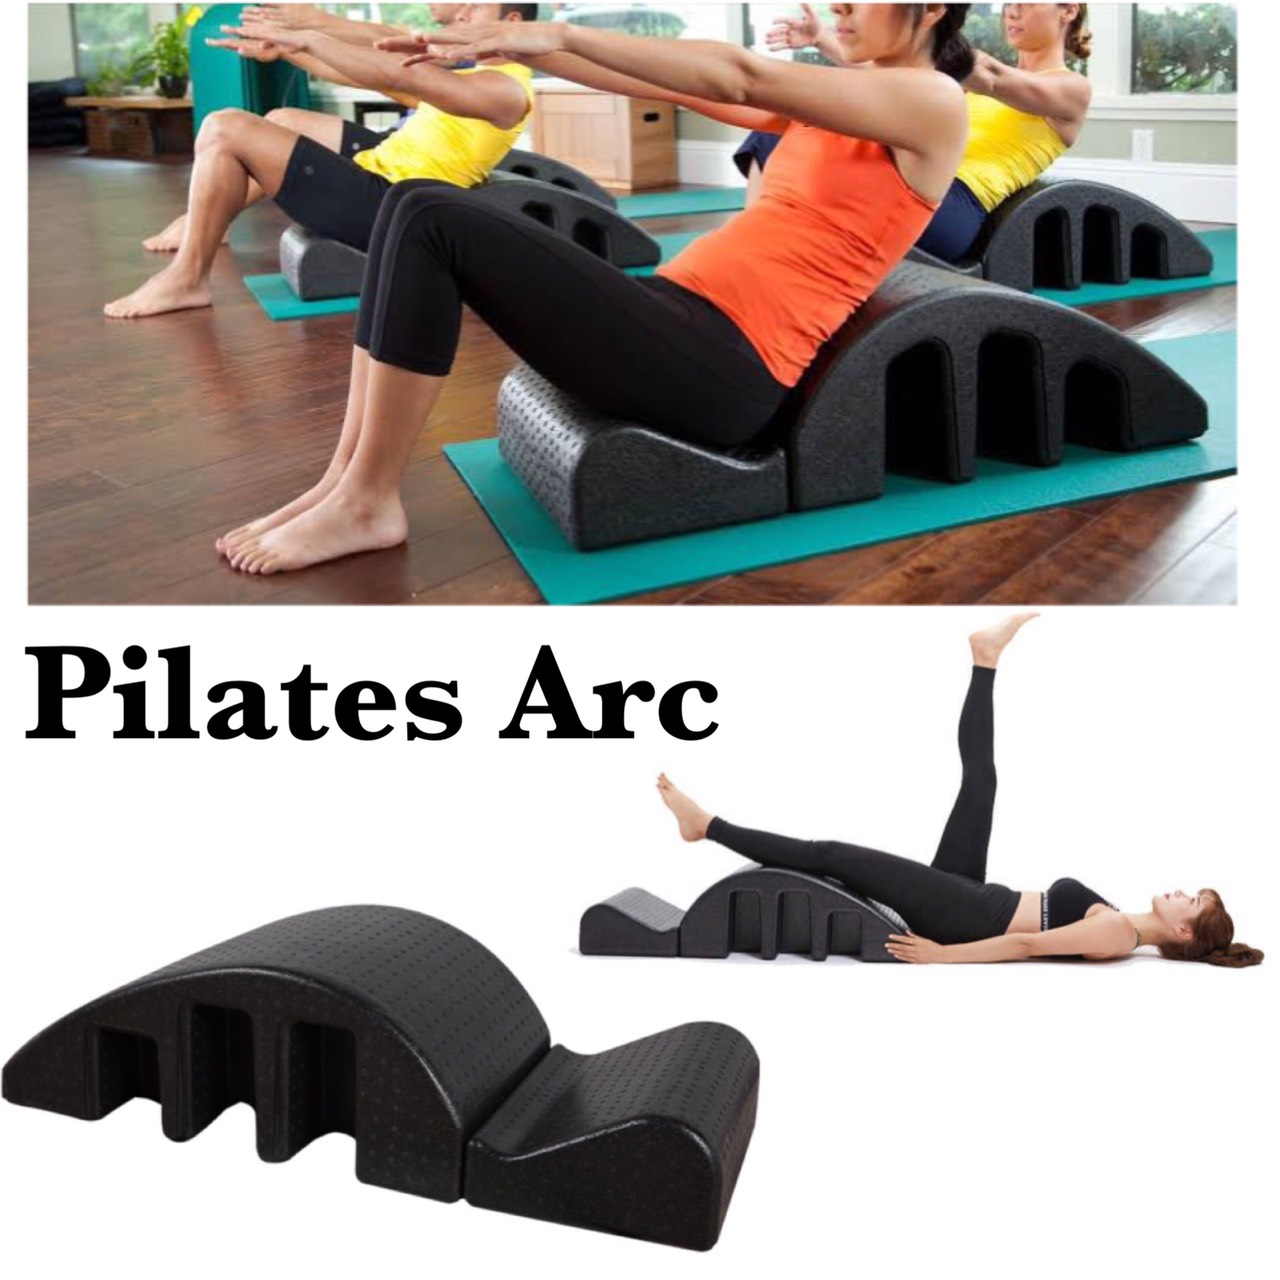 Pilates Arc Exercise อุปกรณ์เล่นโยคะ พิลาทิส